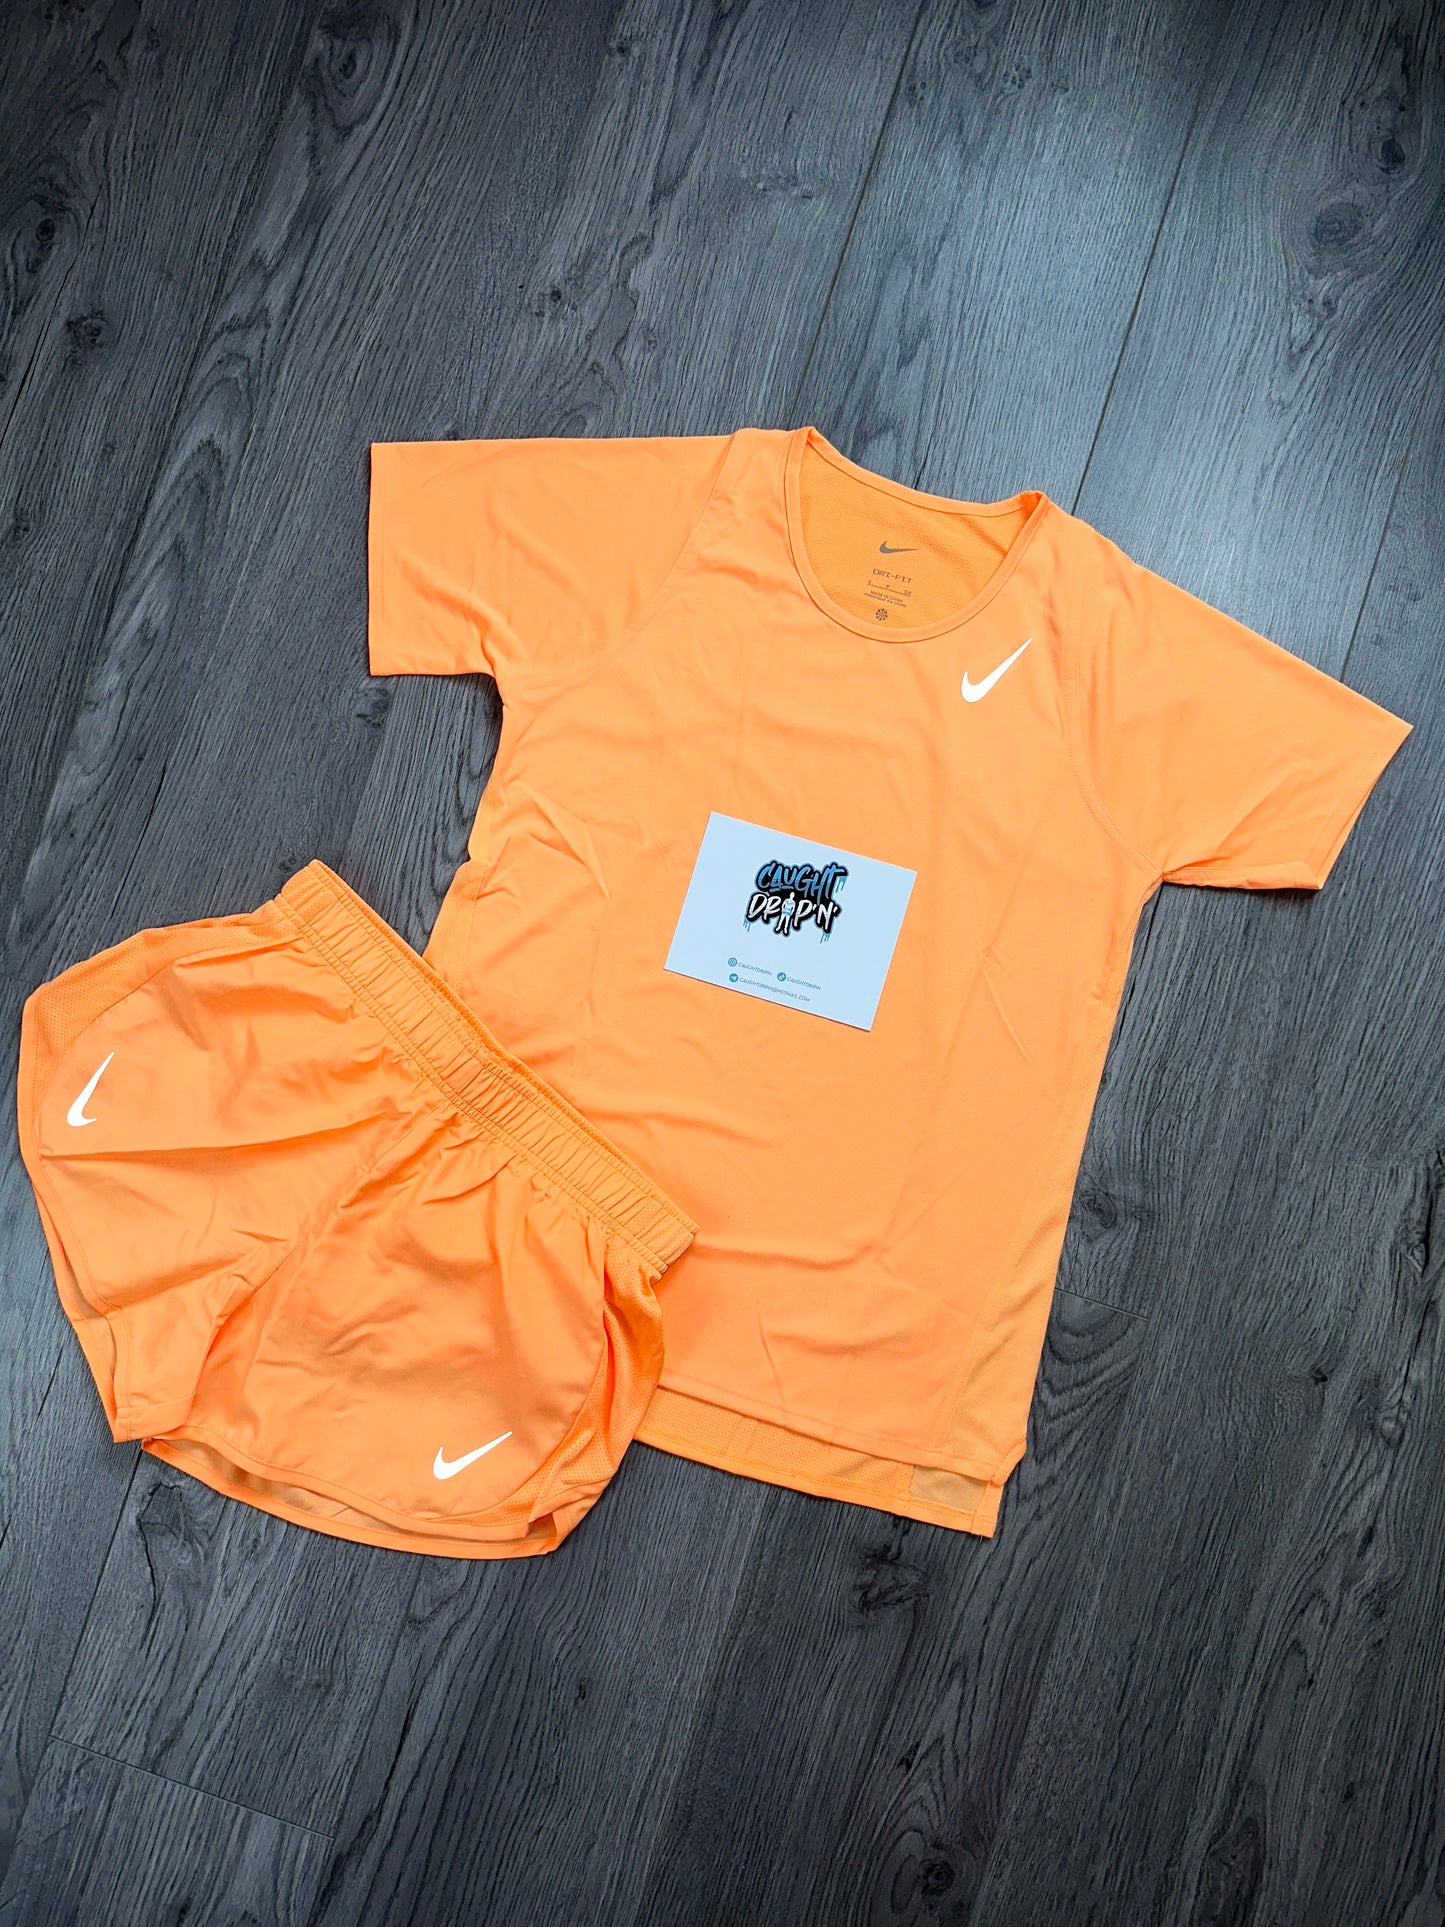 Women’s Nike Running Set Peach